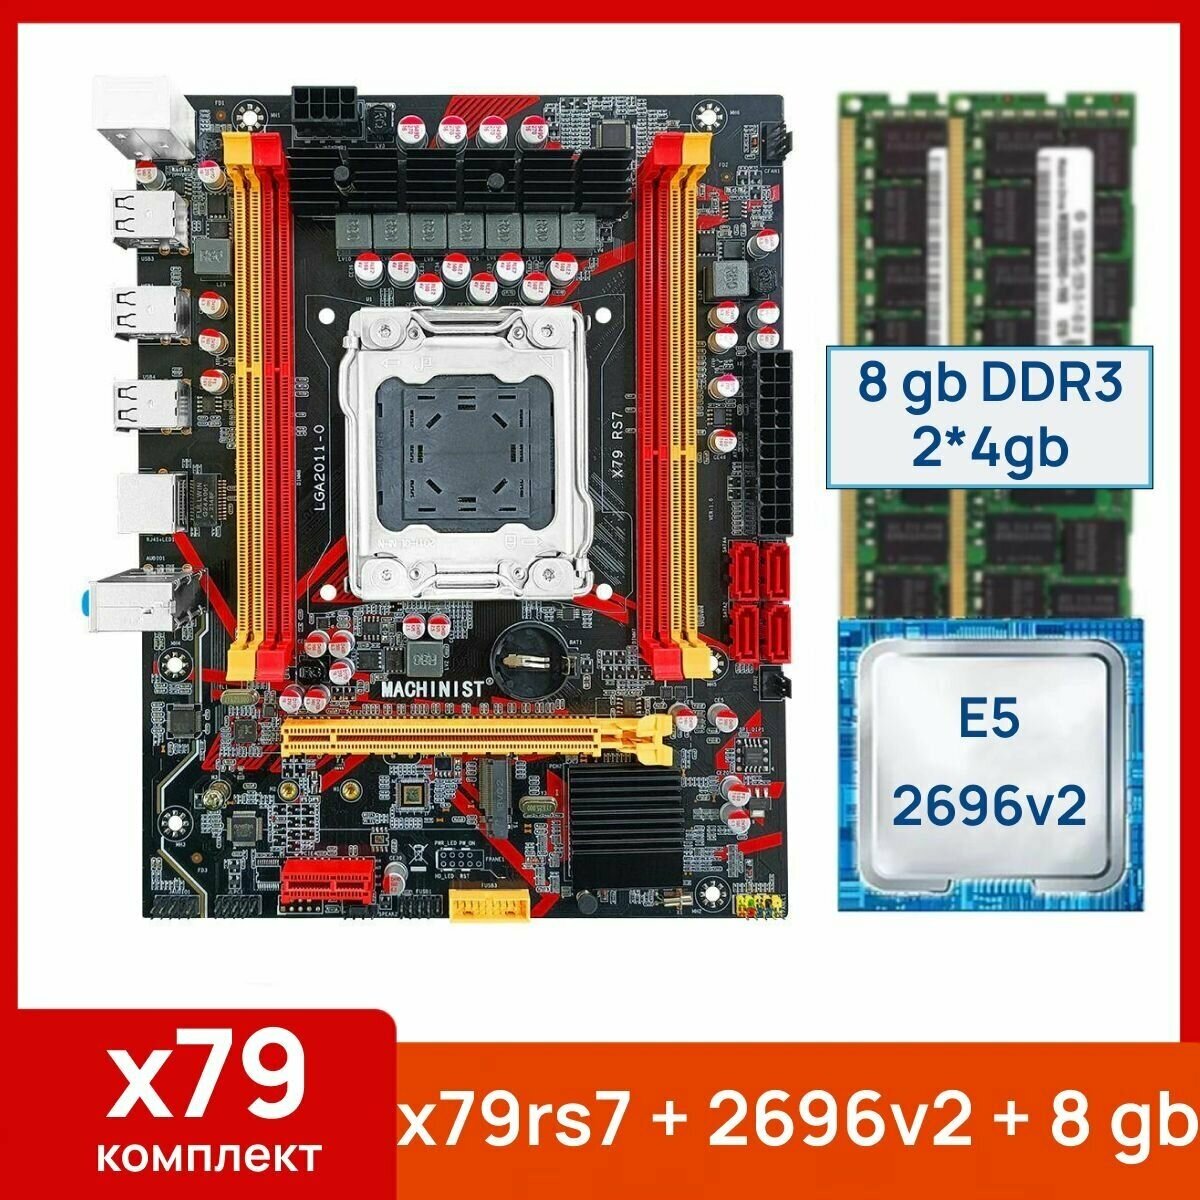 Комплект: Материнская плата Machinist RS-7 + Процессор Xeon E5 2696v2 + 8 gb(2x4gb) DDR3 серверная